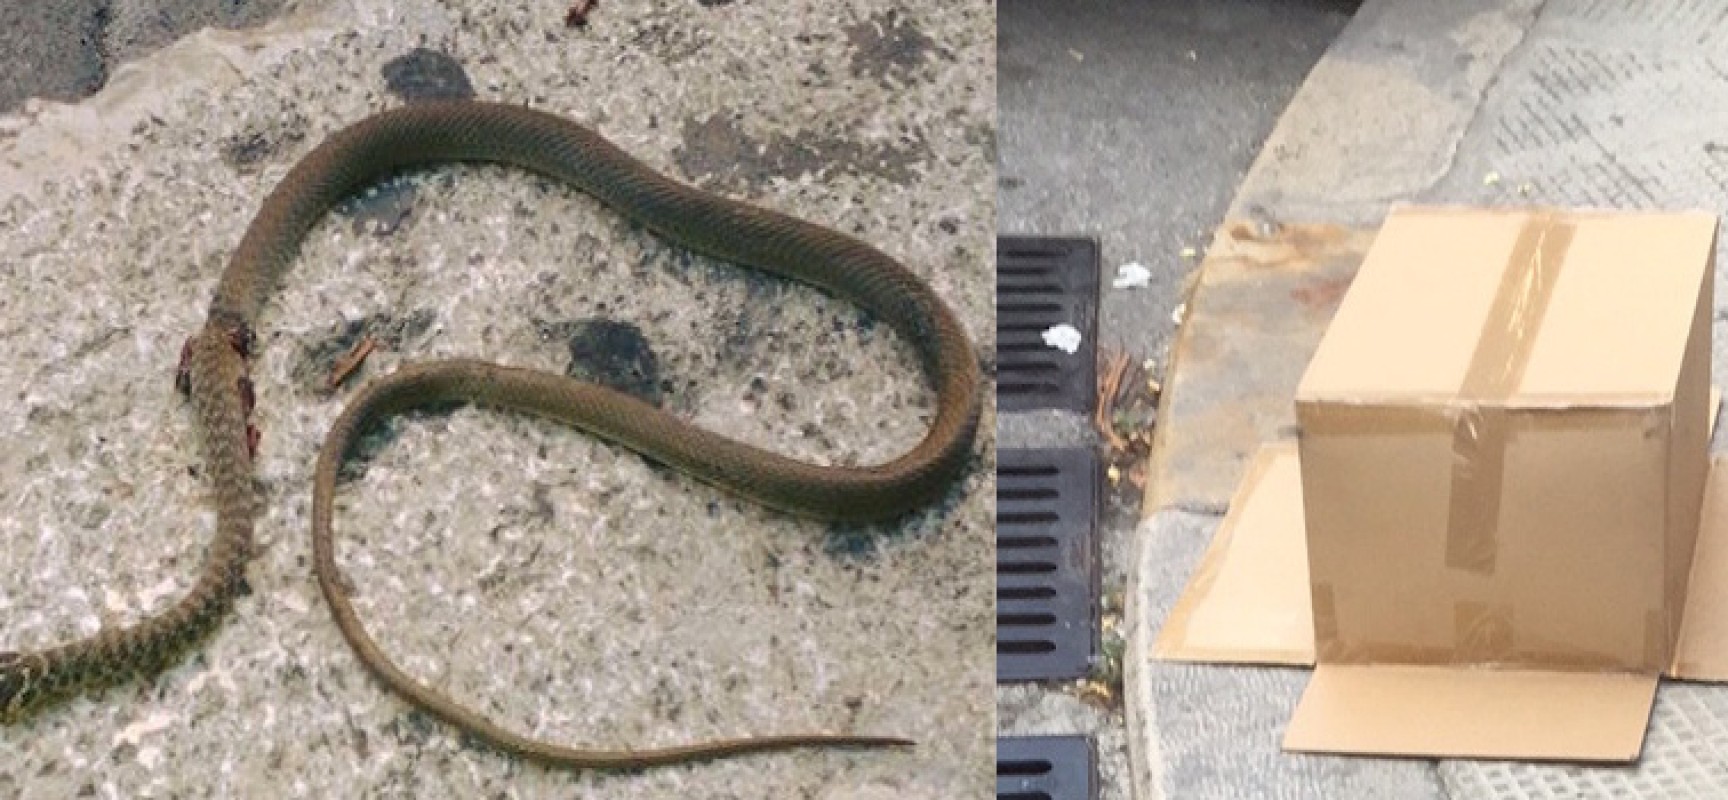 Un serpente e un topo in via Piave tra gli occhi esterrefatti dei passanti